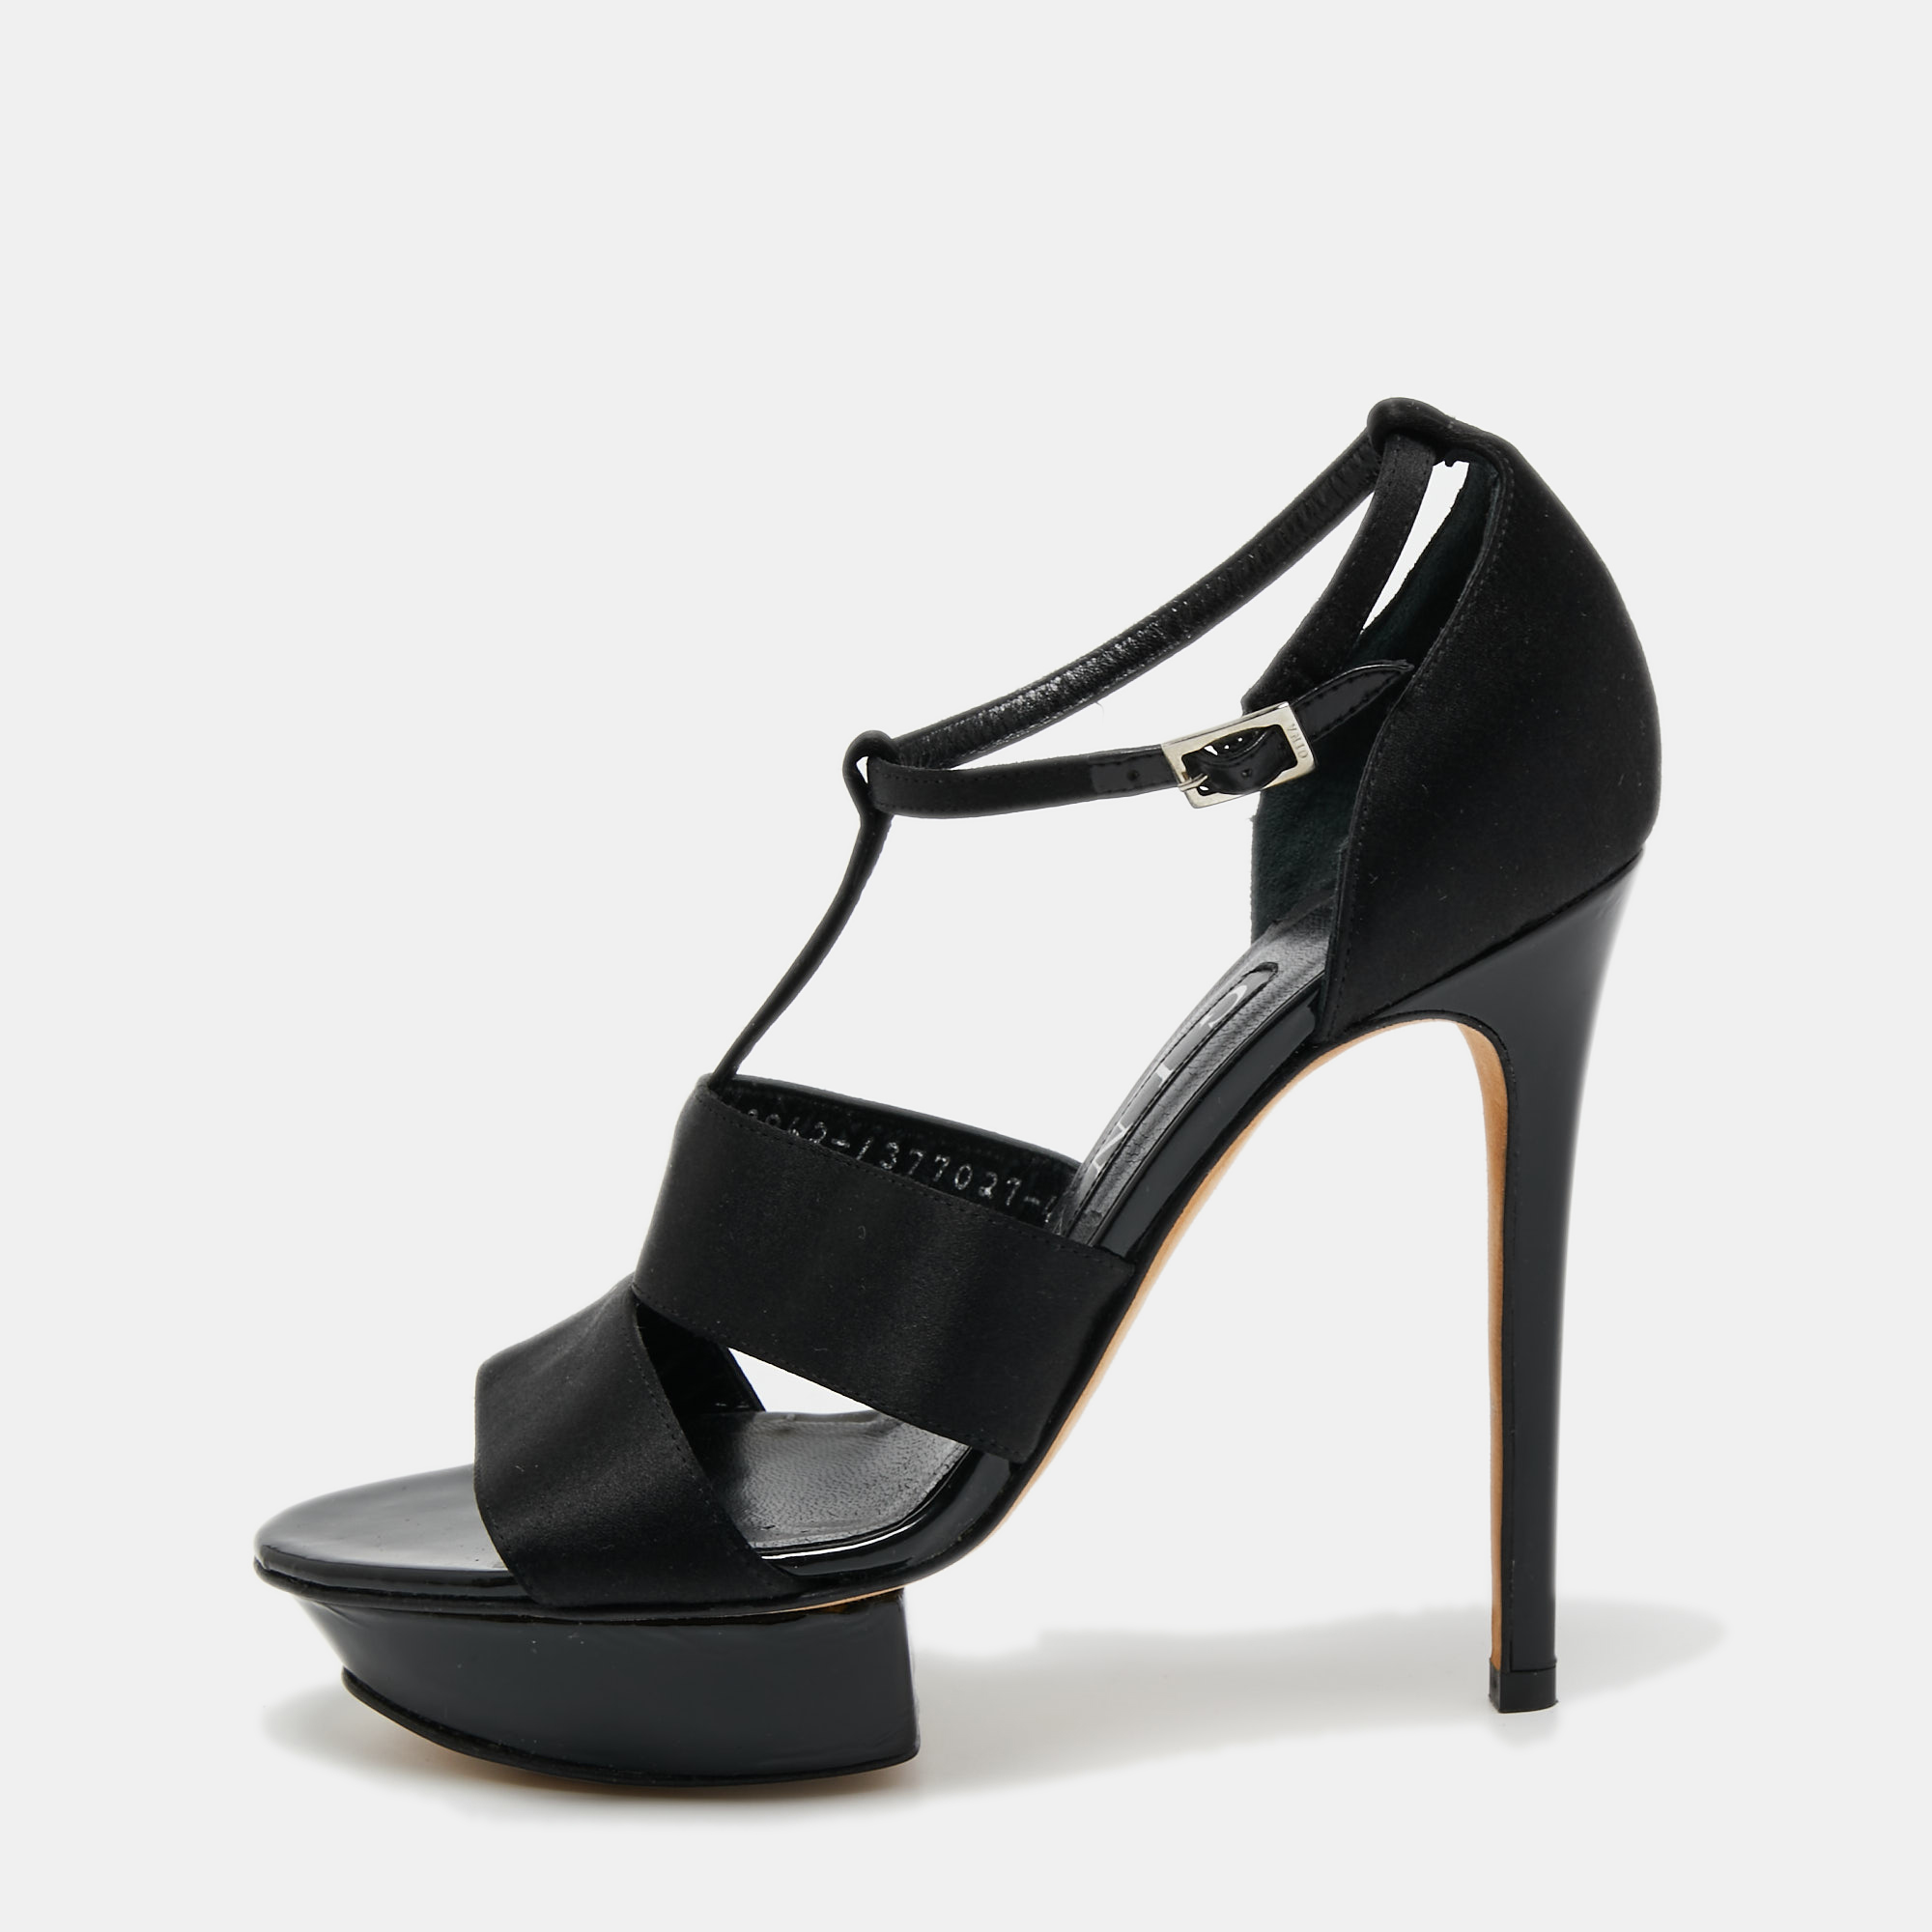 Gina black satin ankle strap platform sandals size 37.5